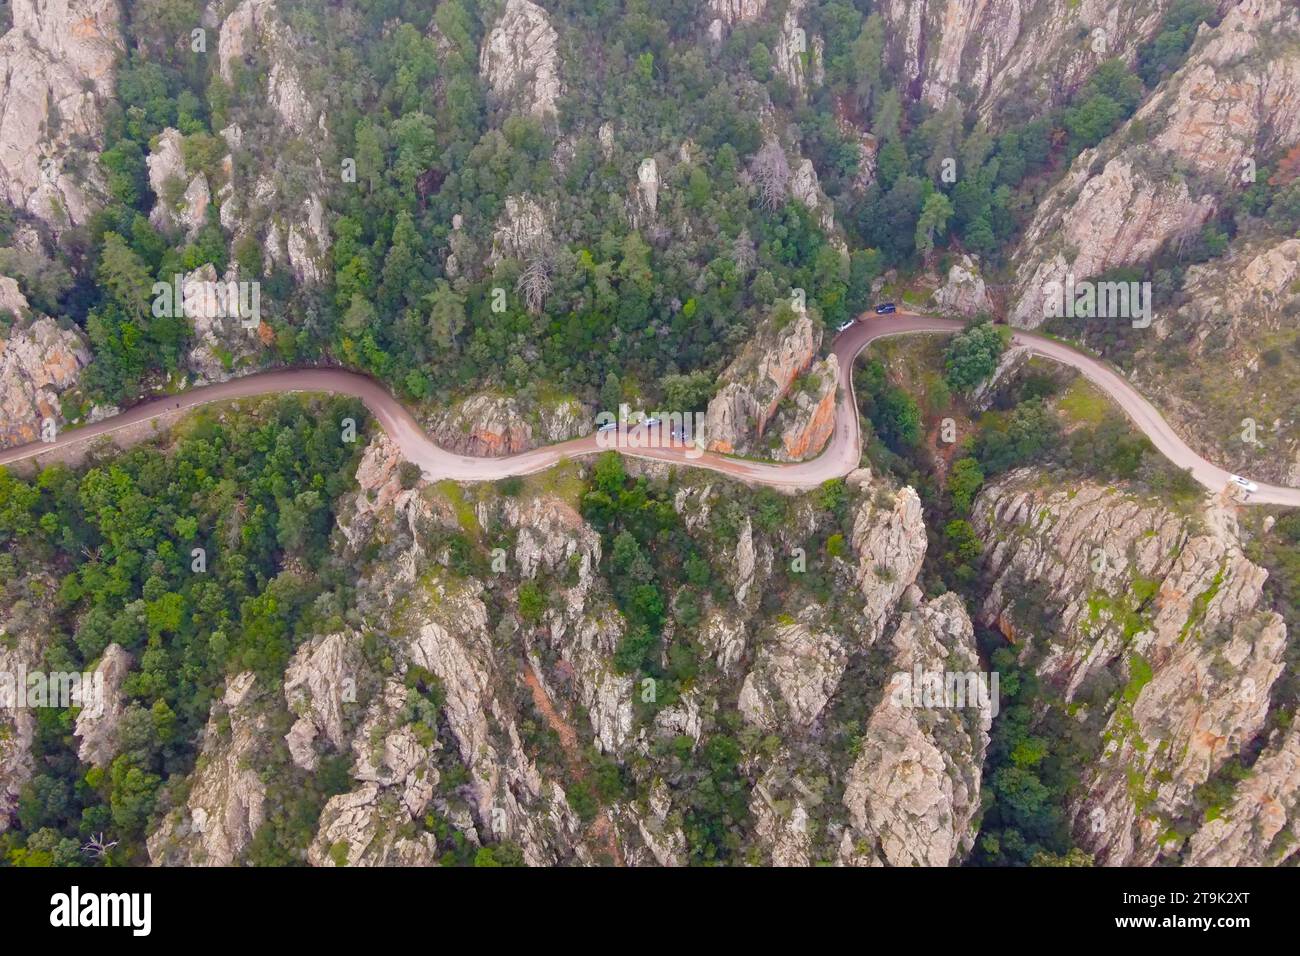 Le strade tortuose che attraversano le magnifiche insenature di piana, patrimonio dell'umanità dell'UNESCO in Corsica, Francia. Foto Stock